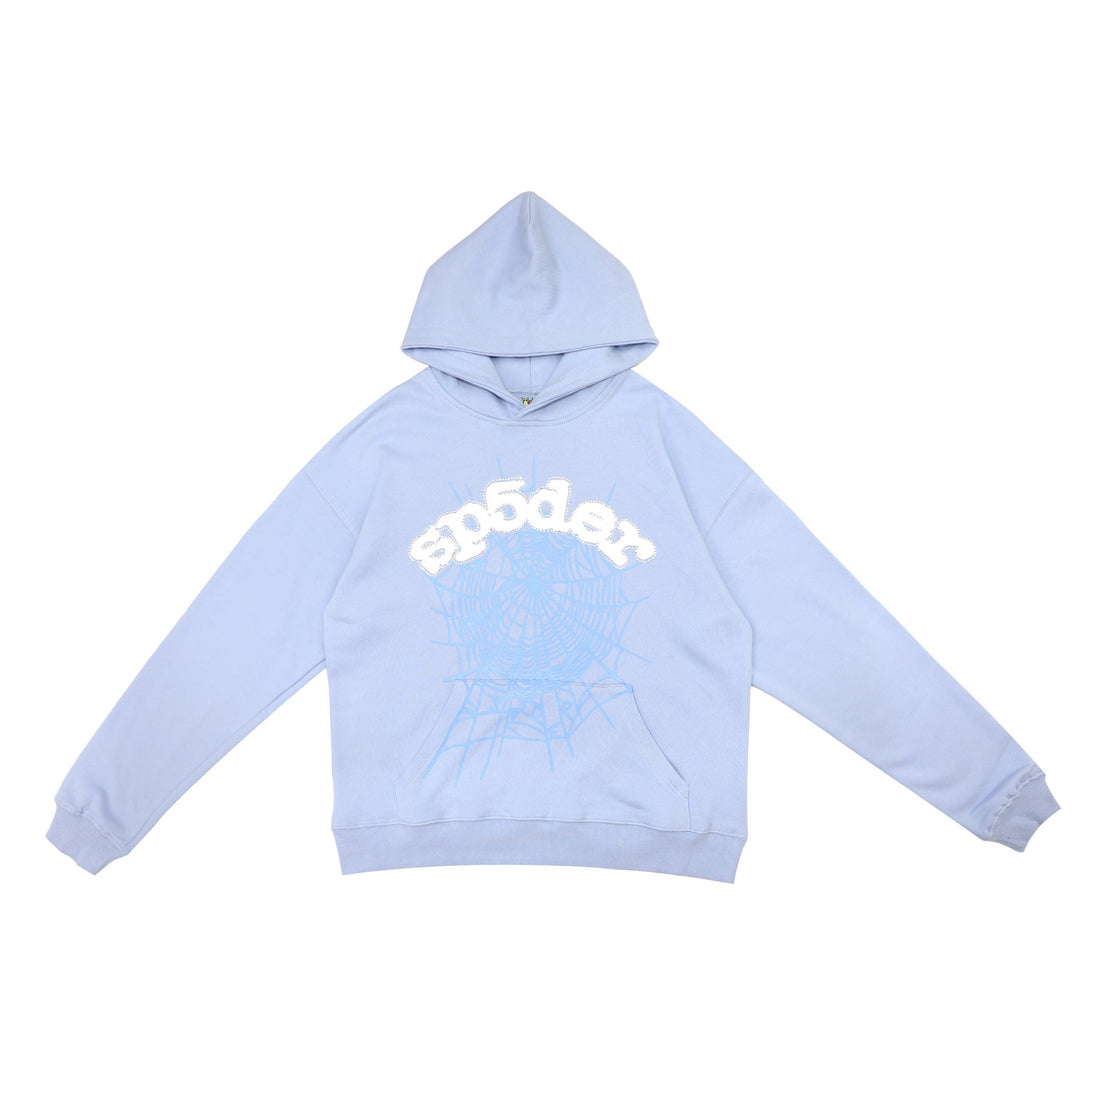 Elegant Light Blue Sp5der Hoodie - Trendy Web Print Hooded Sweatshirt - Seakoff